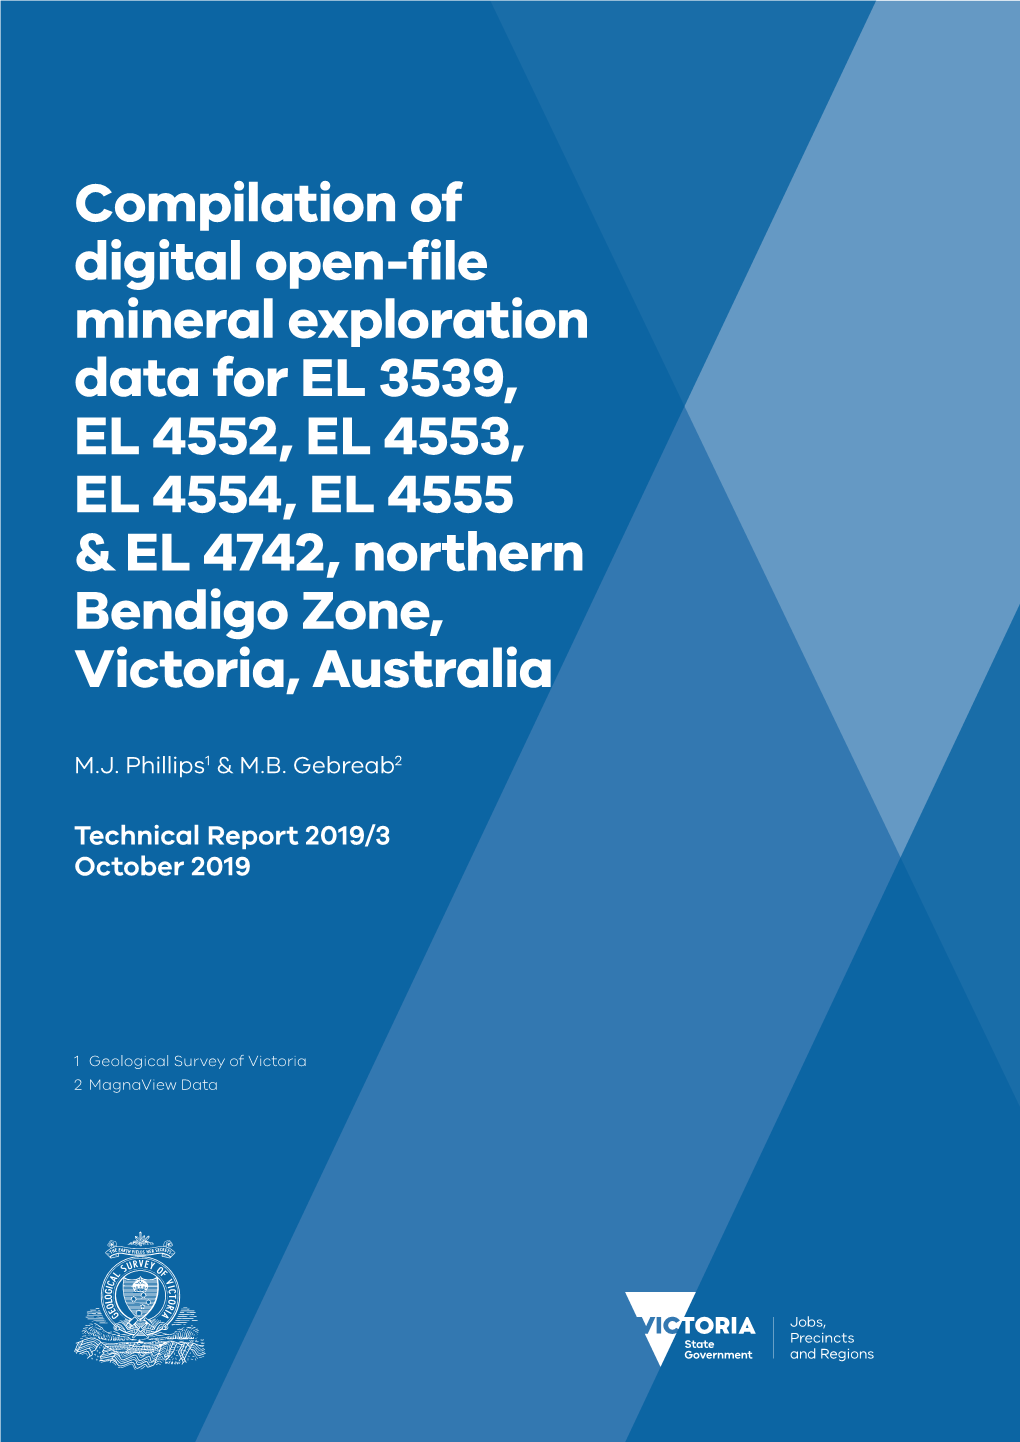 Compilation of Digital Open-File Mineral Exploration Data for EL 3539, EL 4552, EL 4553, EL 4554, EL 4555 & EL 4742, Northern Bendigo Zone, Victoria, Australia